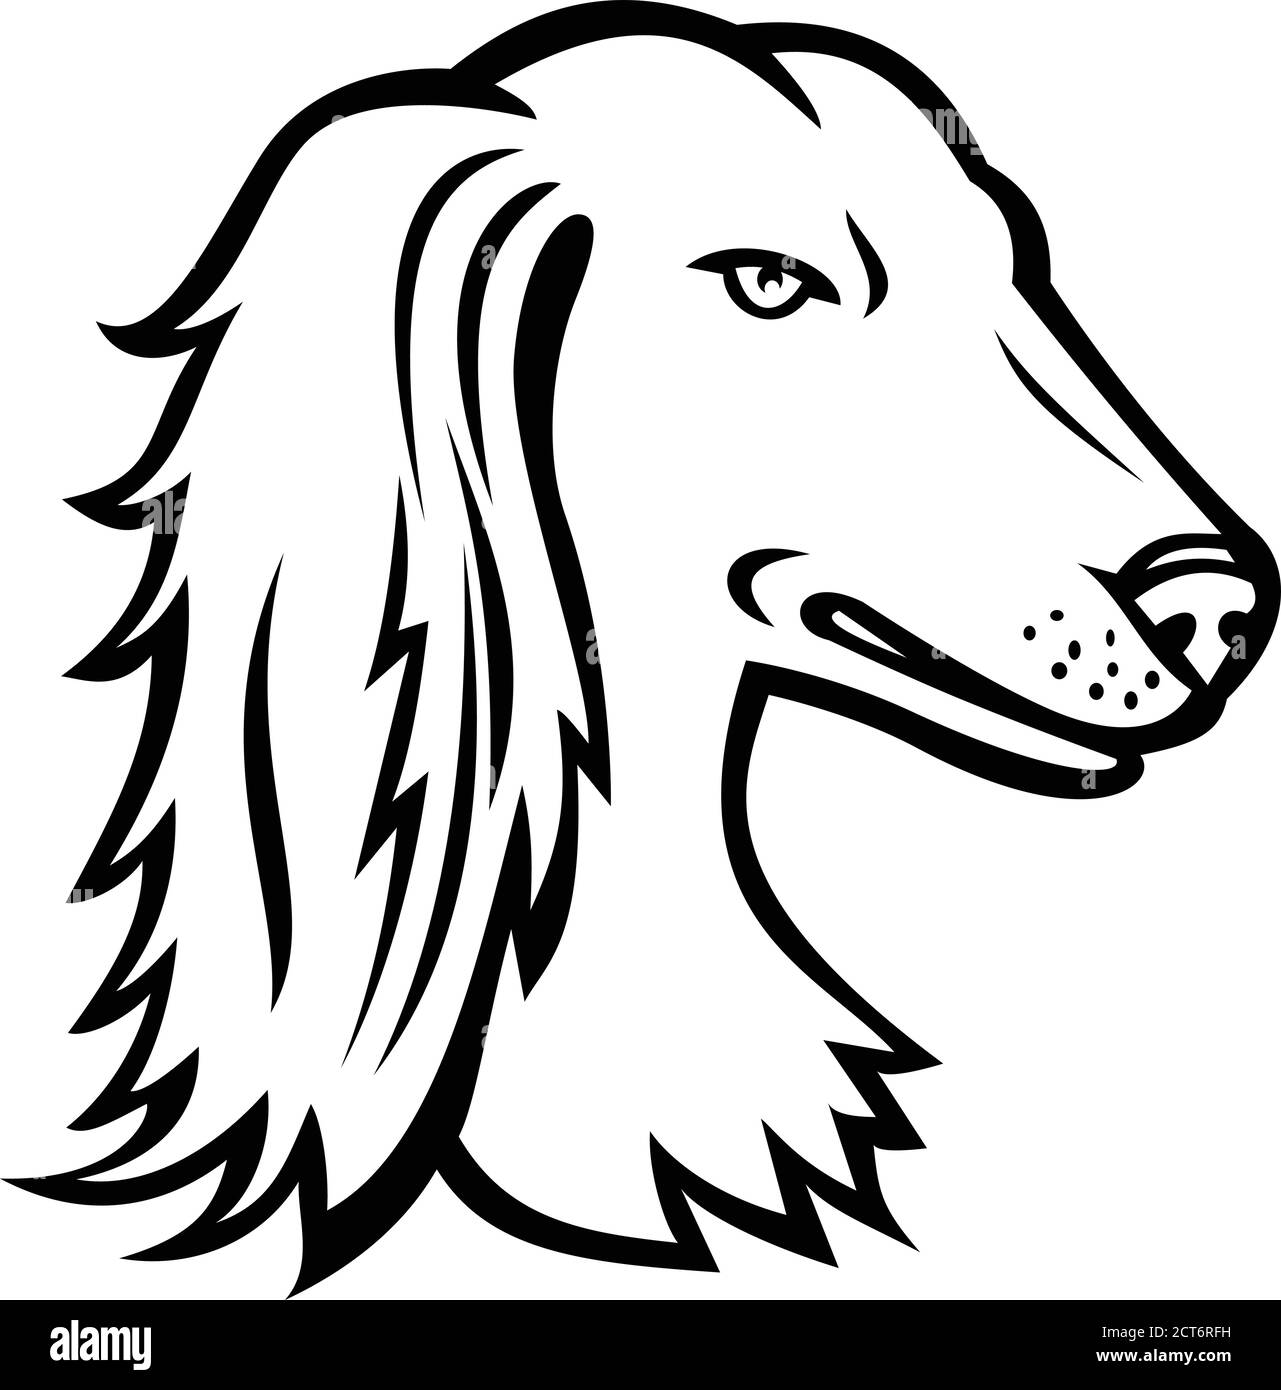 Maskottchen Symbol Abbildung: Leiter der Saluki, der auch als Persischer Windhund oder Tazi, ein Hund Rasse wie ein Windhund auf isolierten Hintergrund in r eingestuft bekannt Stock Vektor